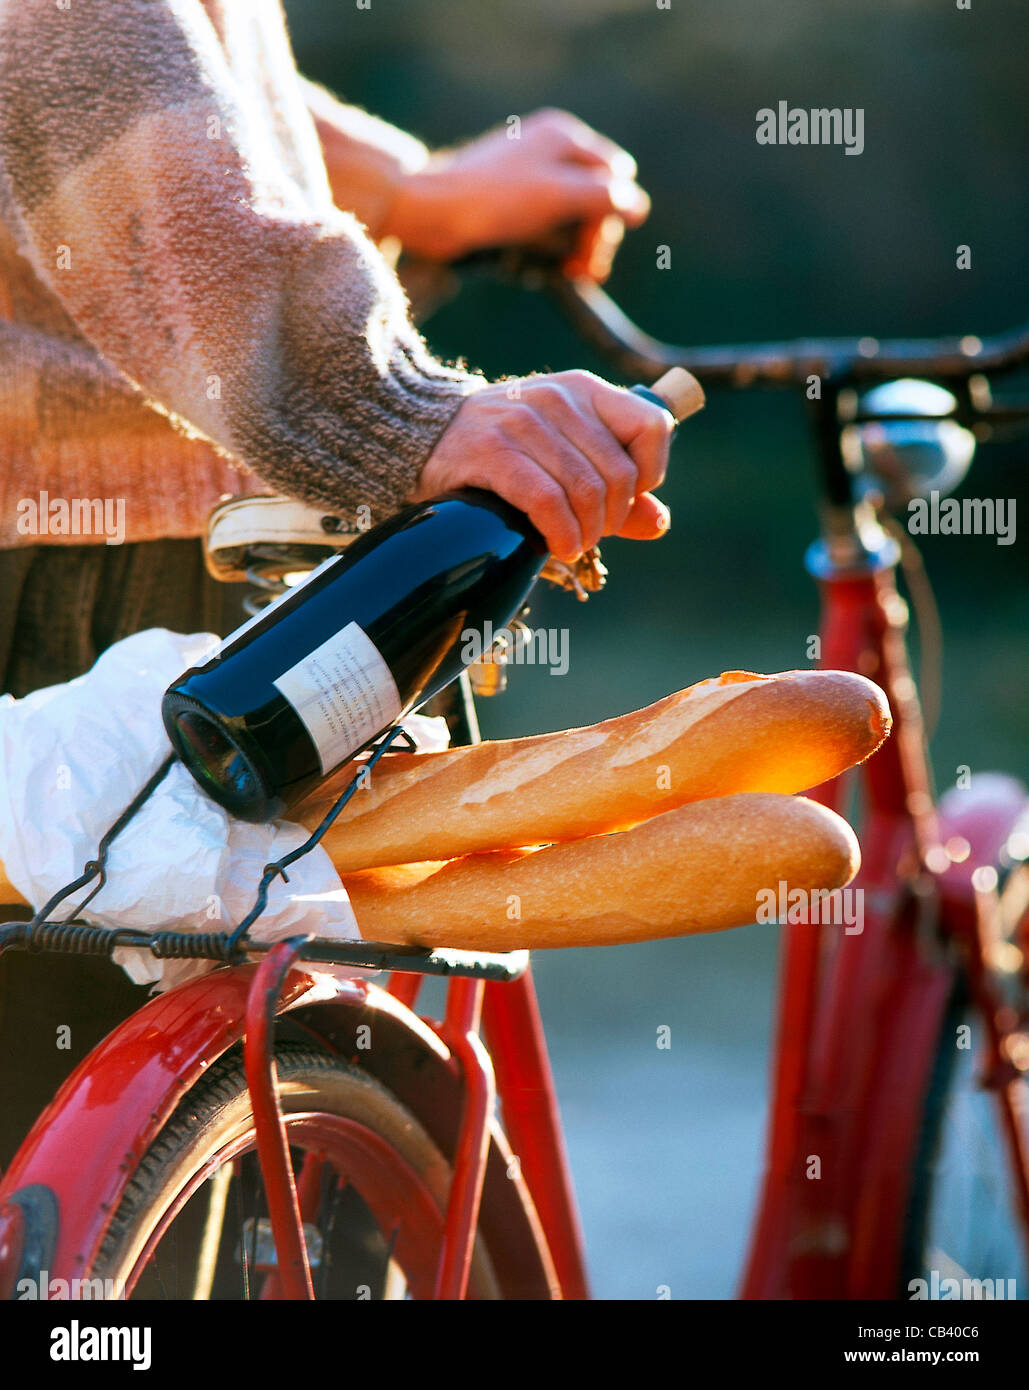 ancora-luomo-con-la-bici-bottiglia-di-vino-rosso-in-mano-baguette-sul-supporto-cb40c6.jpg